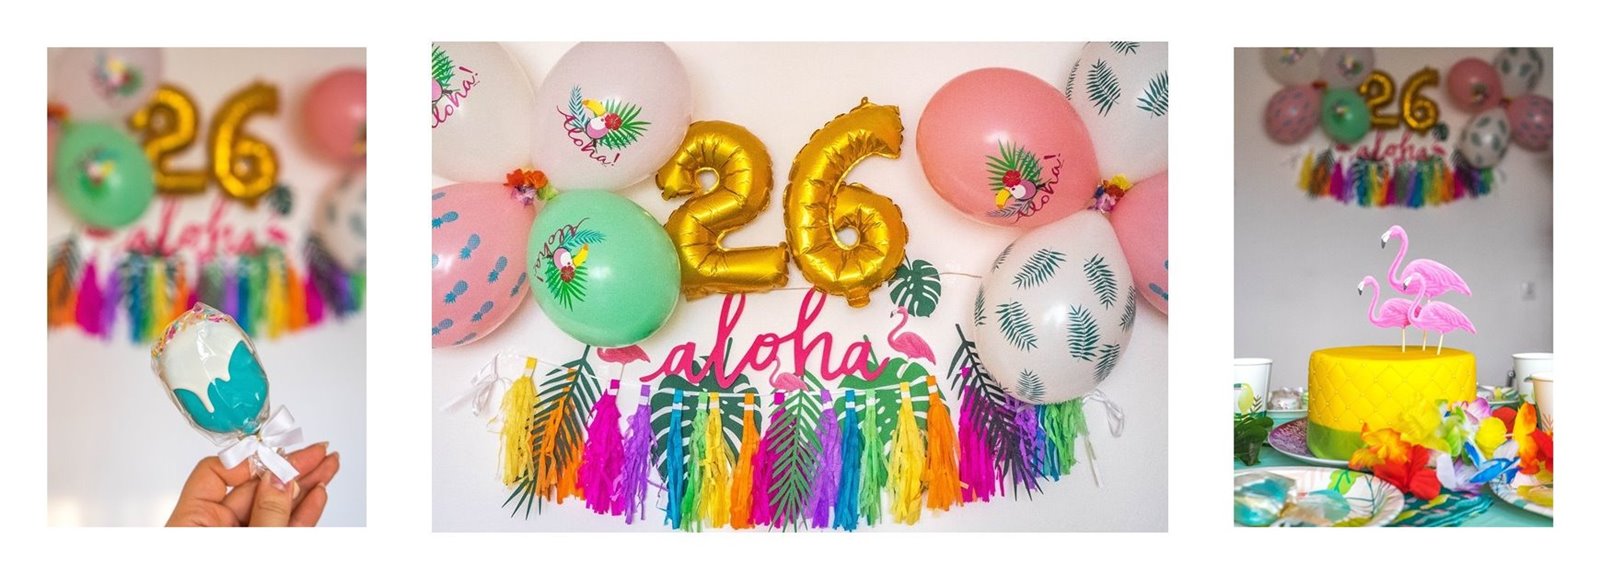 14a dekoracje w stylu hawajskim gdzie kupić papierowe talerzyki kolorowe dla dzieci kubki dodatki na urodziny dla dzieci godan party jakośc opinie kolorowe balony jak udekorować dom na urodziny